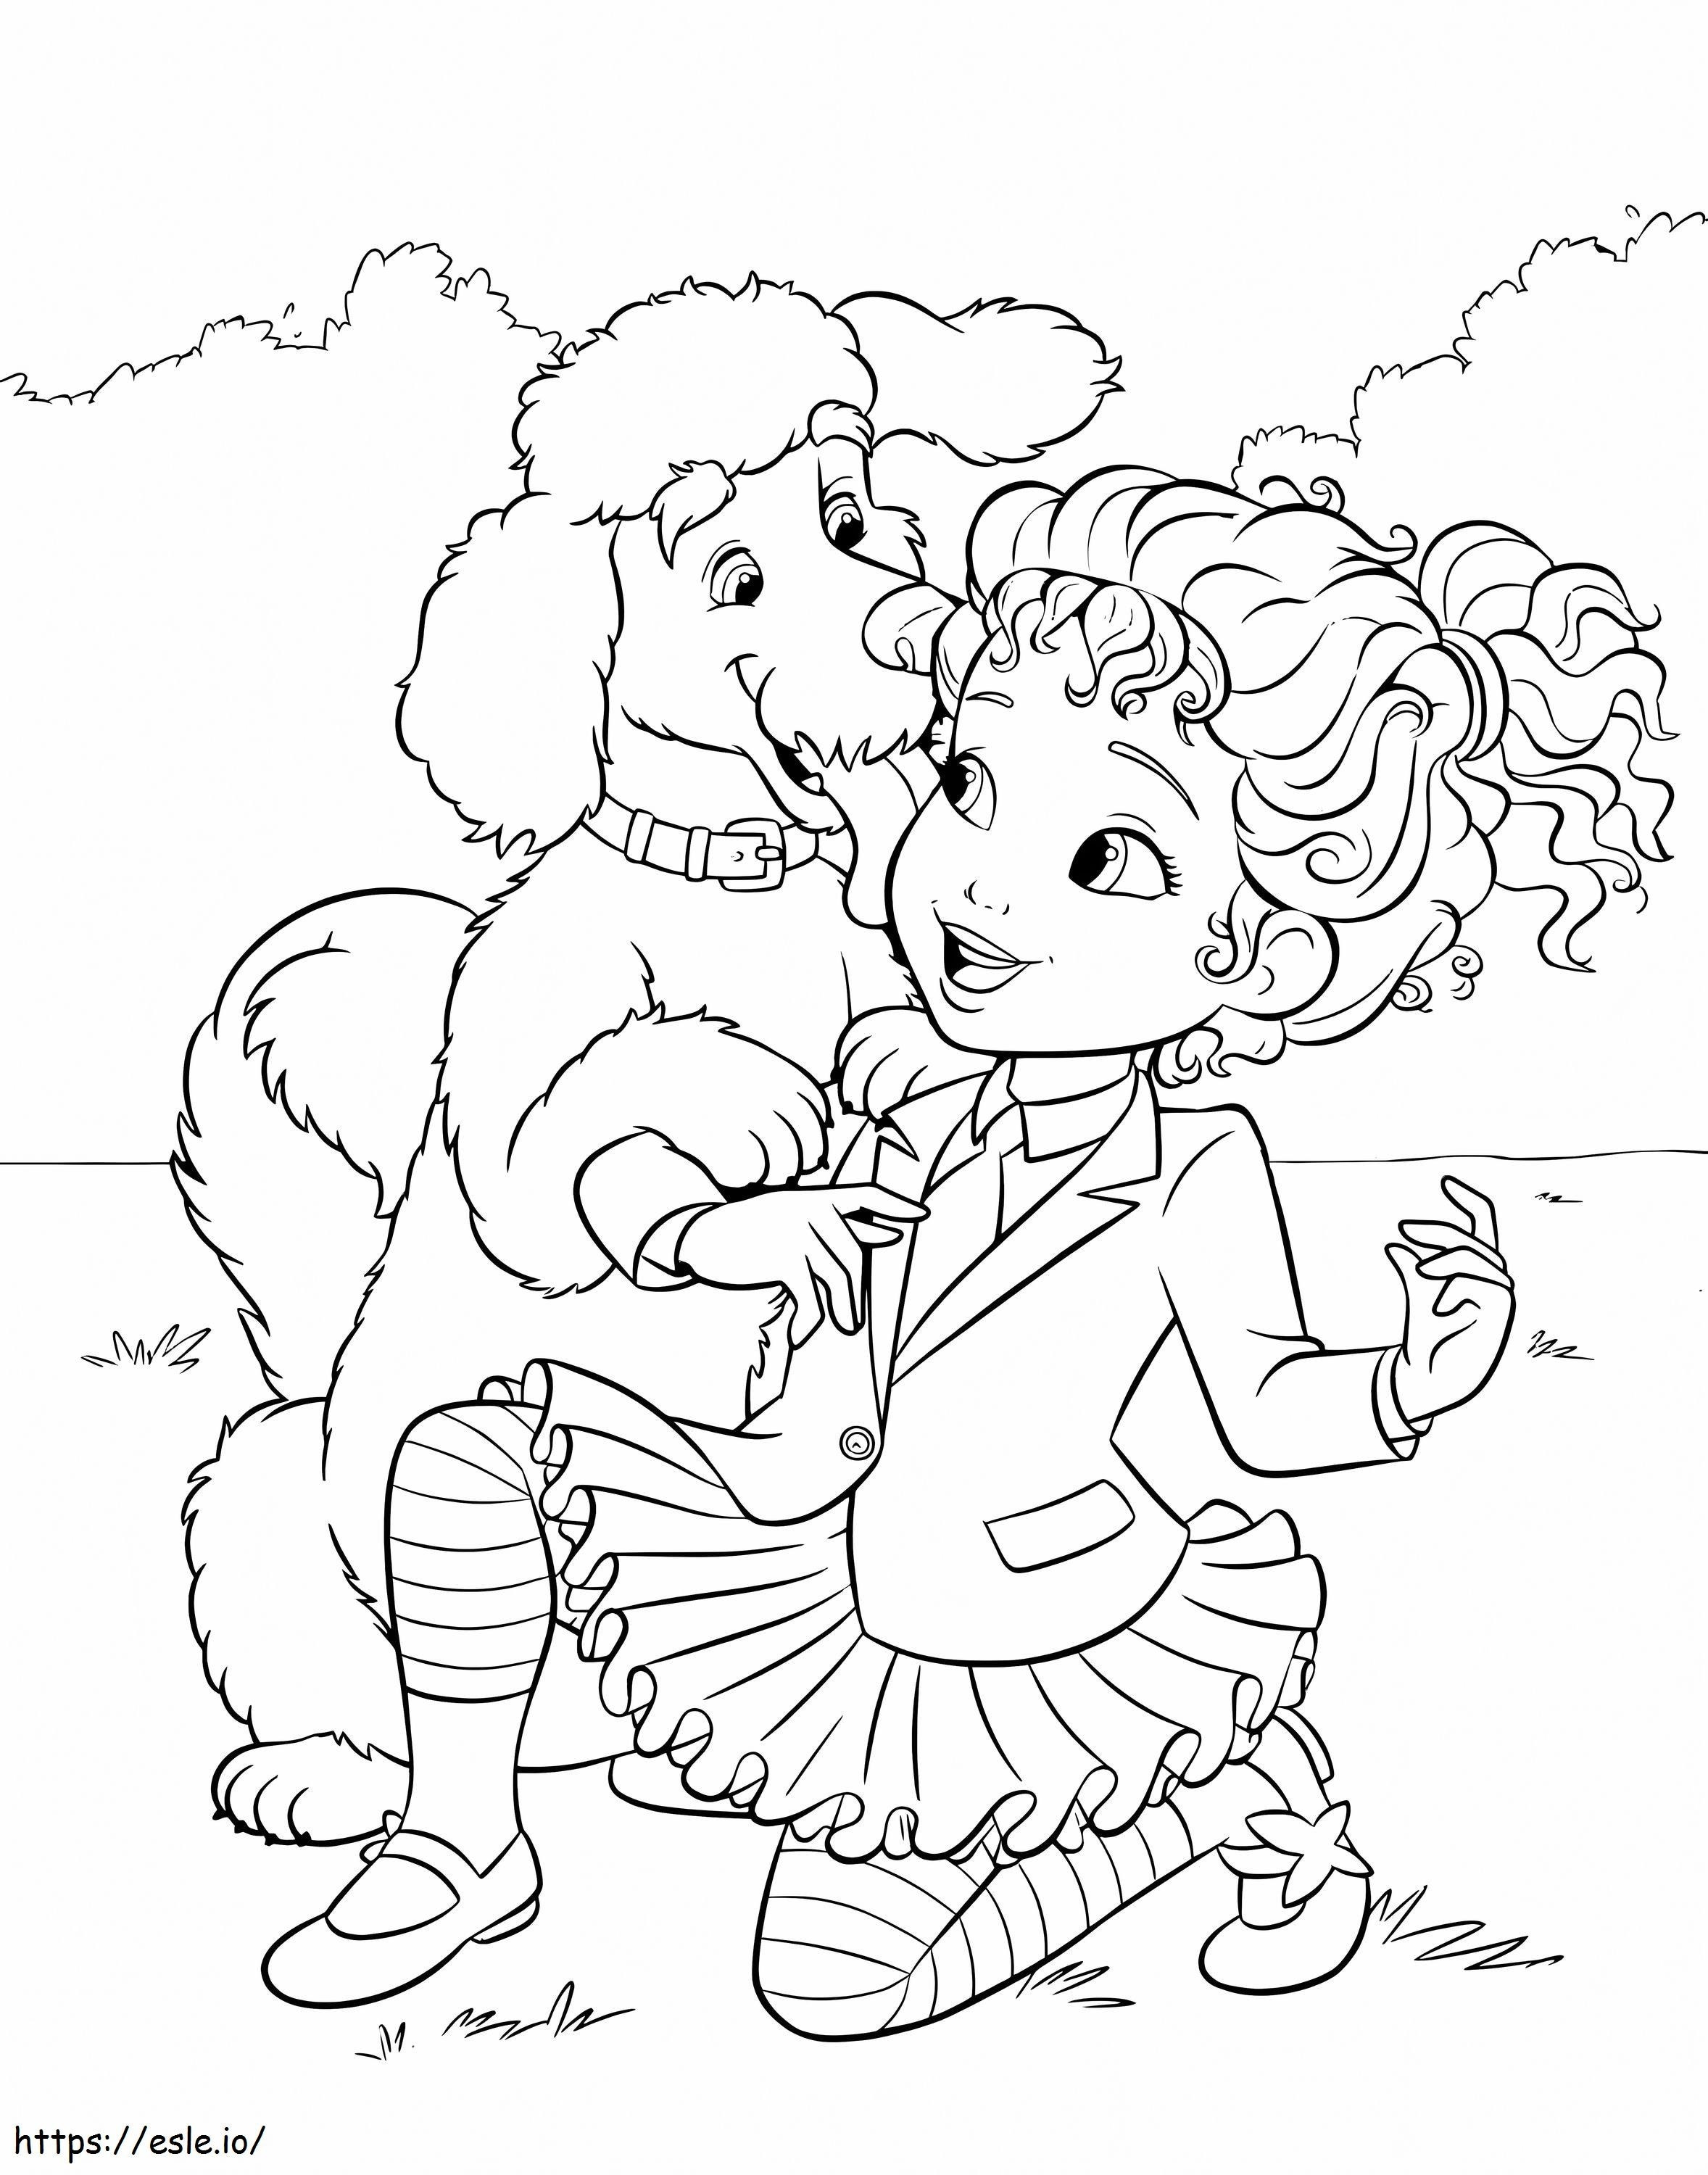 Un cane e una Nancy elegante da colorare